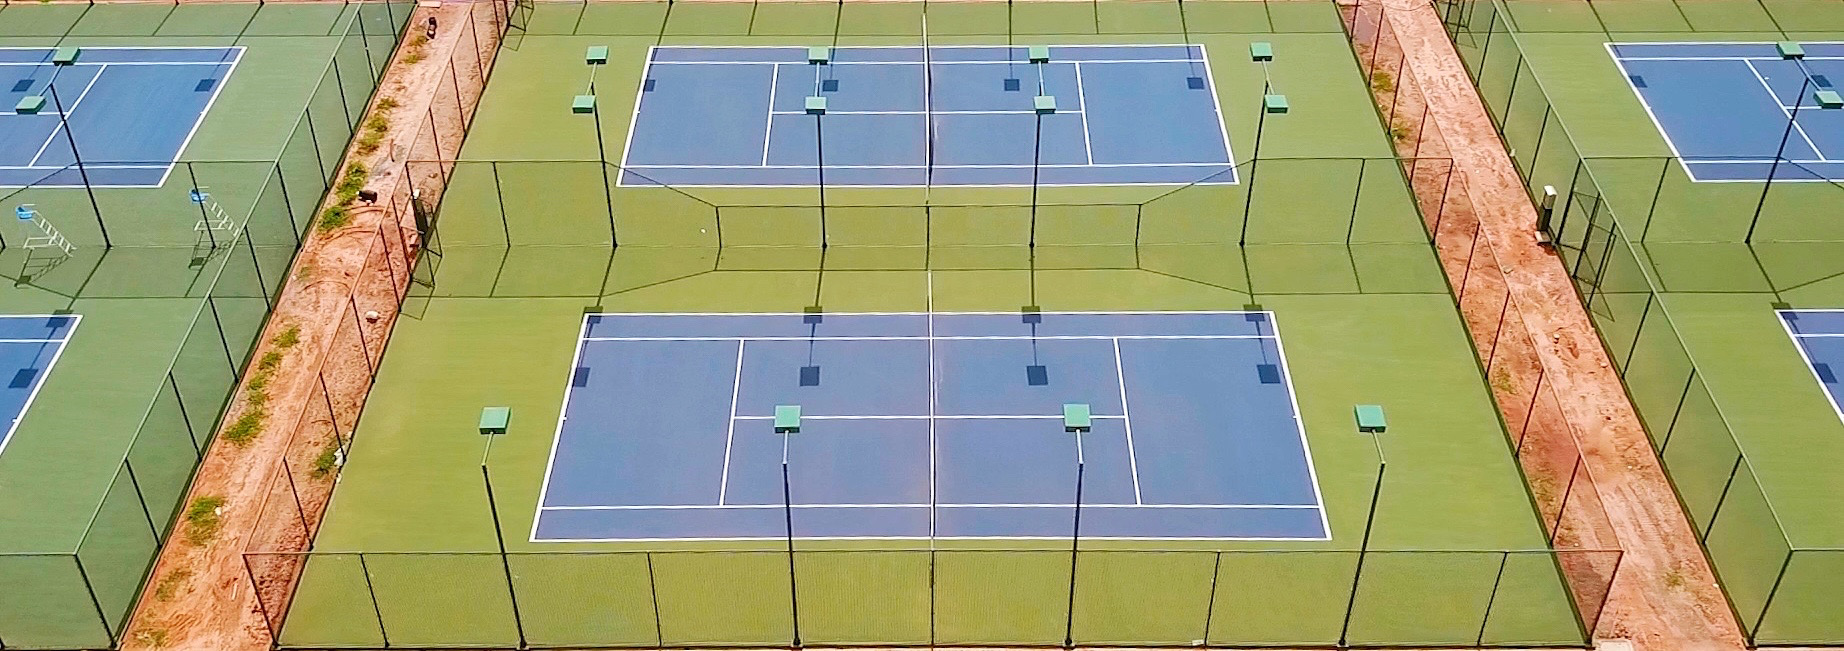 Cụm sân ATP 250 đang trong giai đoạn hoàn thành, dự kiến ra mắt vào tháng 07/2021